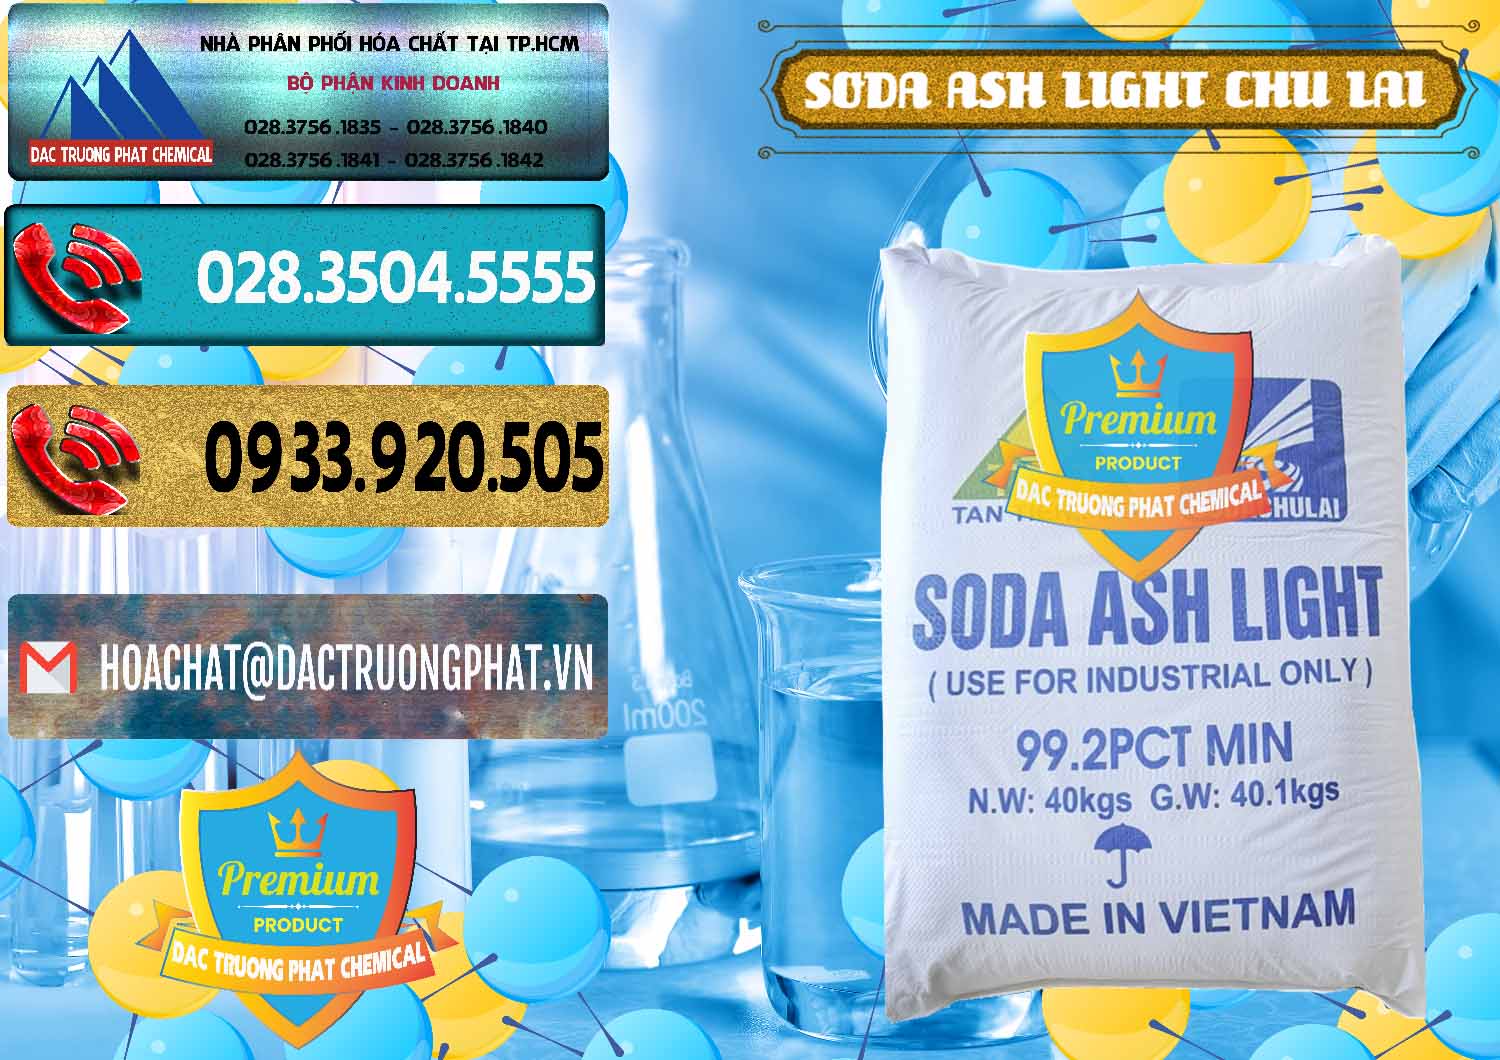 Công ty cung cấp & kinh doanh Soda Ash Light - NA2CO3 Chu Lai Việt Nam - 0489 - Cty chuyên bán _ cung cấp hóa chất tại TP.HCM - hoachatdetnhuom.com